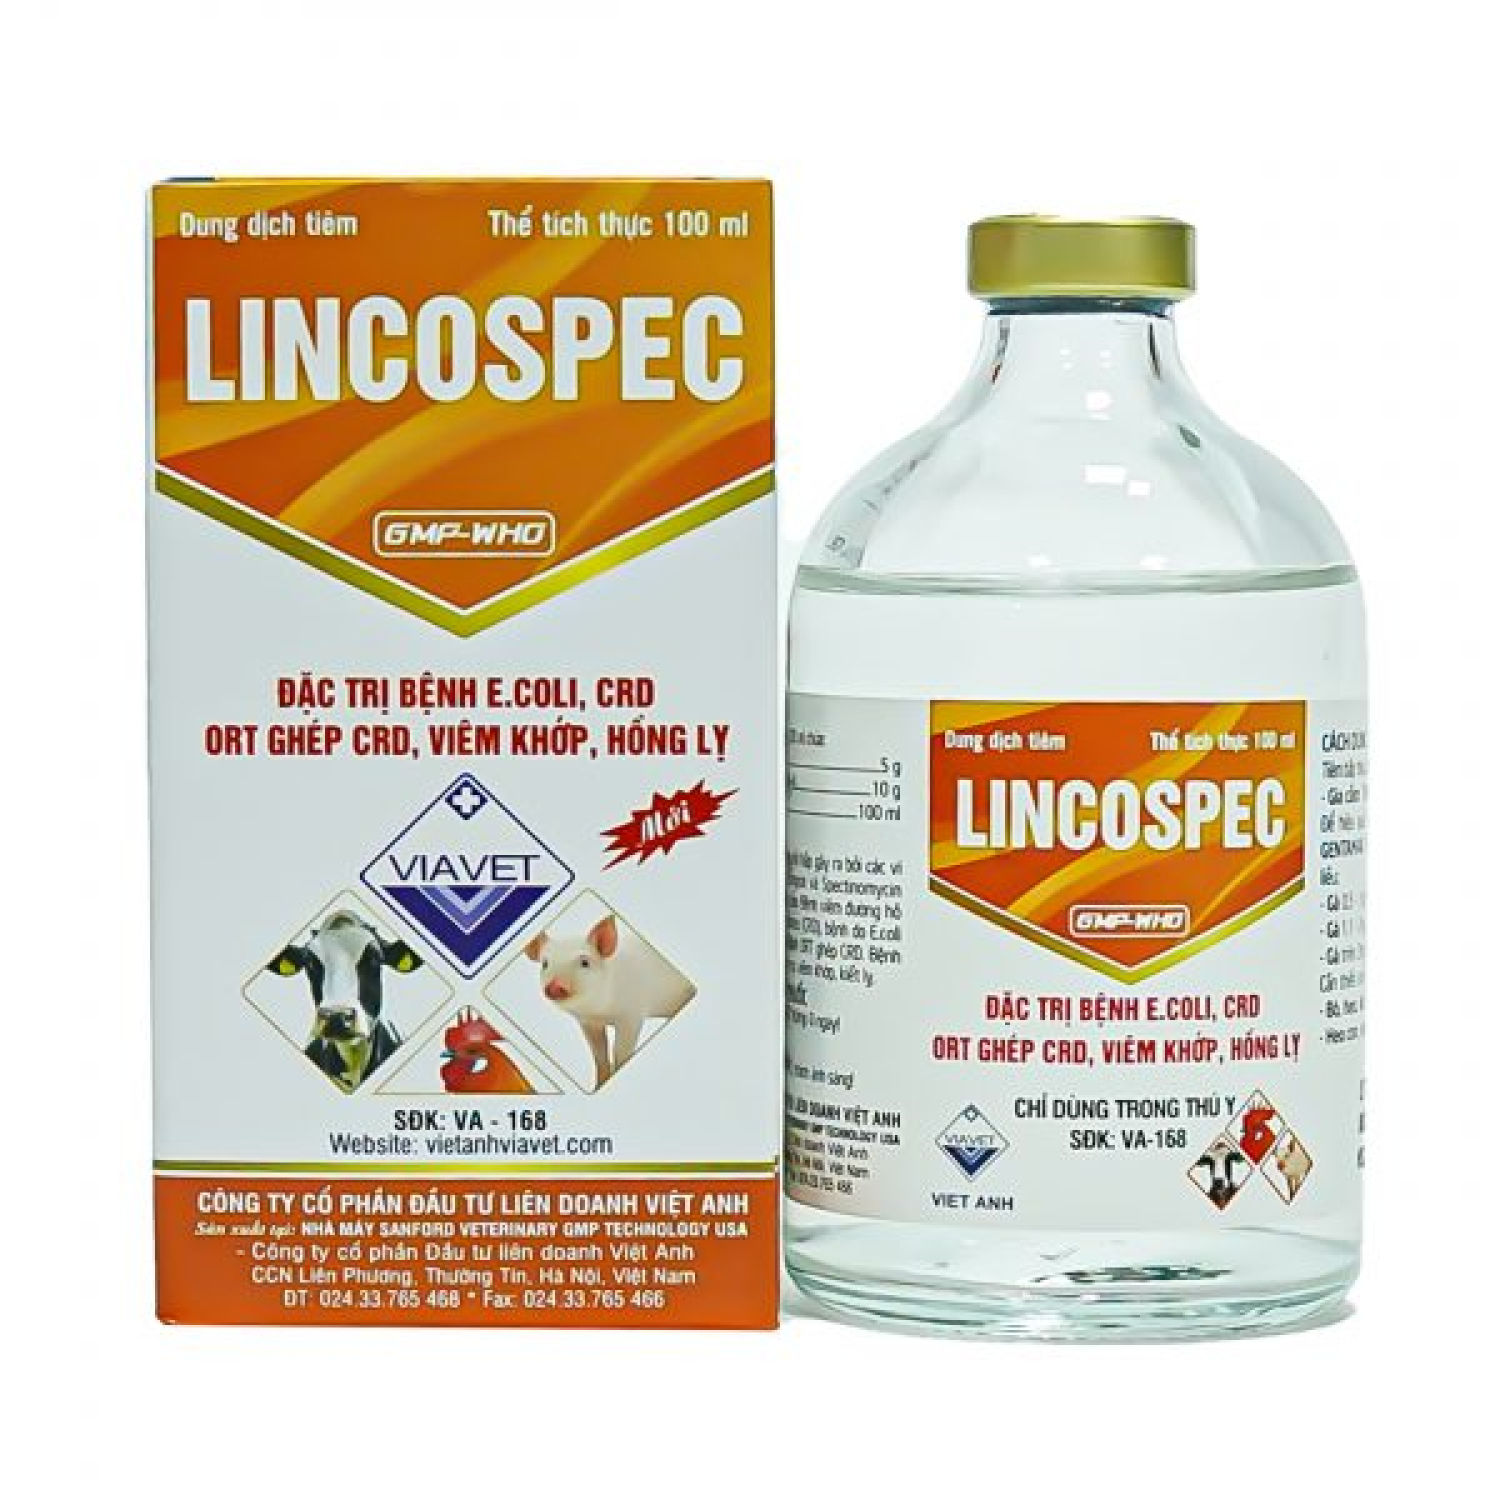 LINCOSPEC chai  100ml đặc trị bệnh do e.coli. crd ort ghép crd viêm khớp hồng lỵ